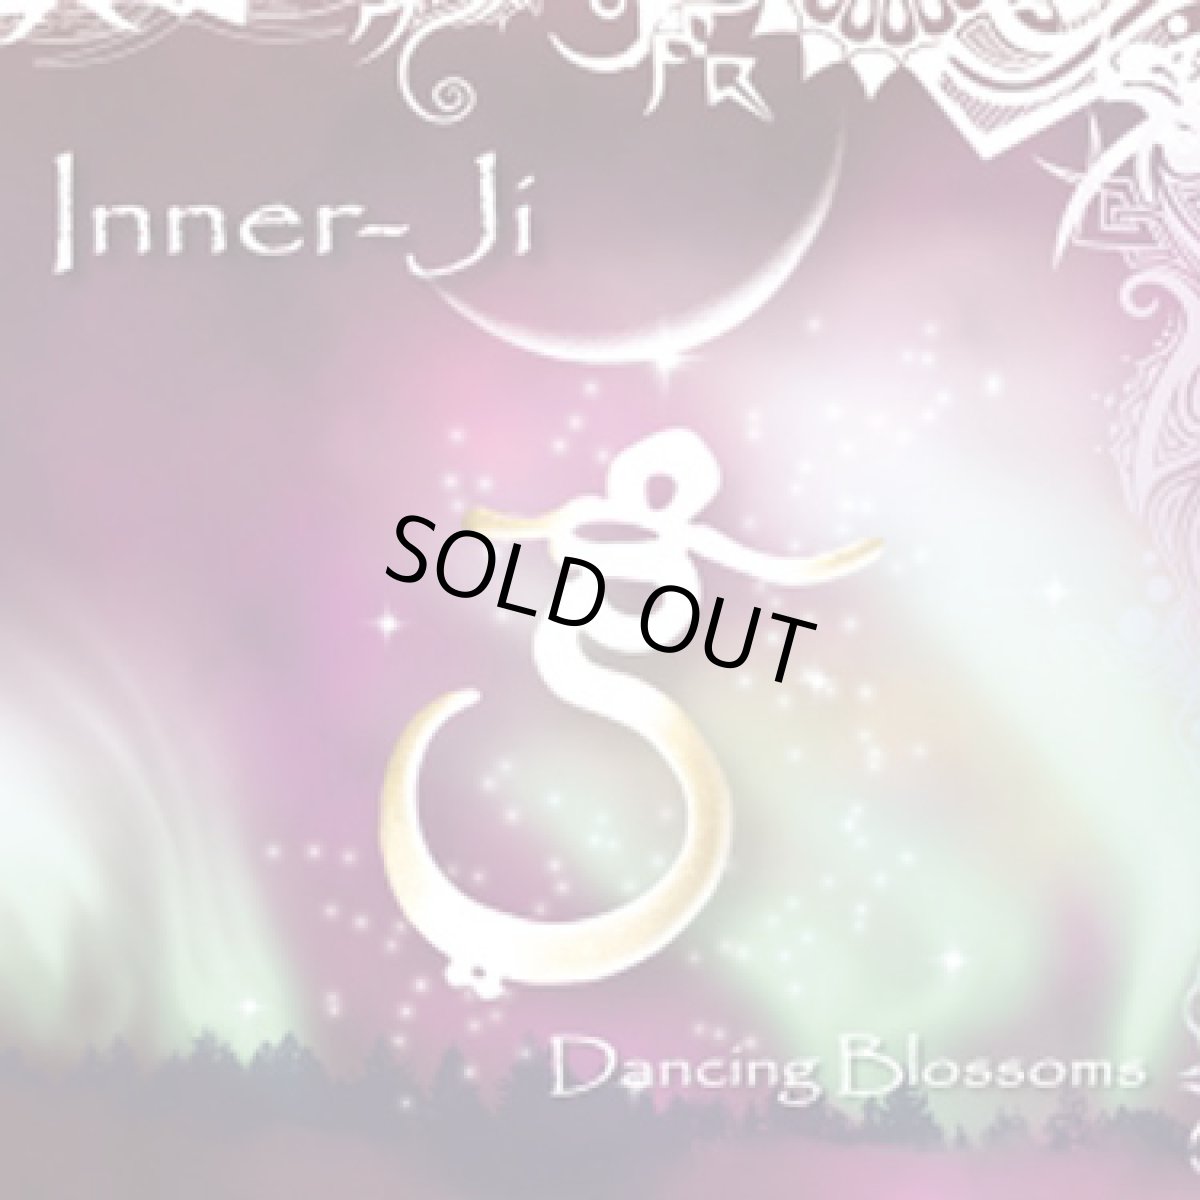 画像1: CD「Inner-Ji / Dancing Blossoms」【エスニック・PSY・ダウンビート】 (1)